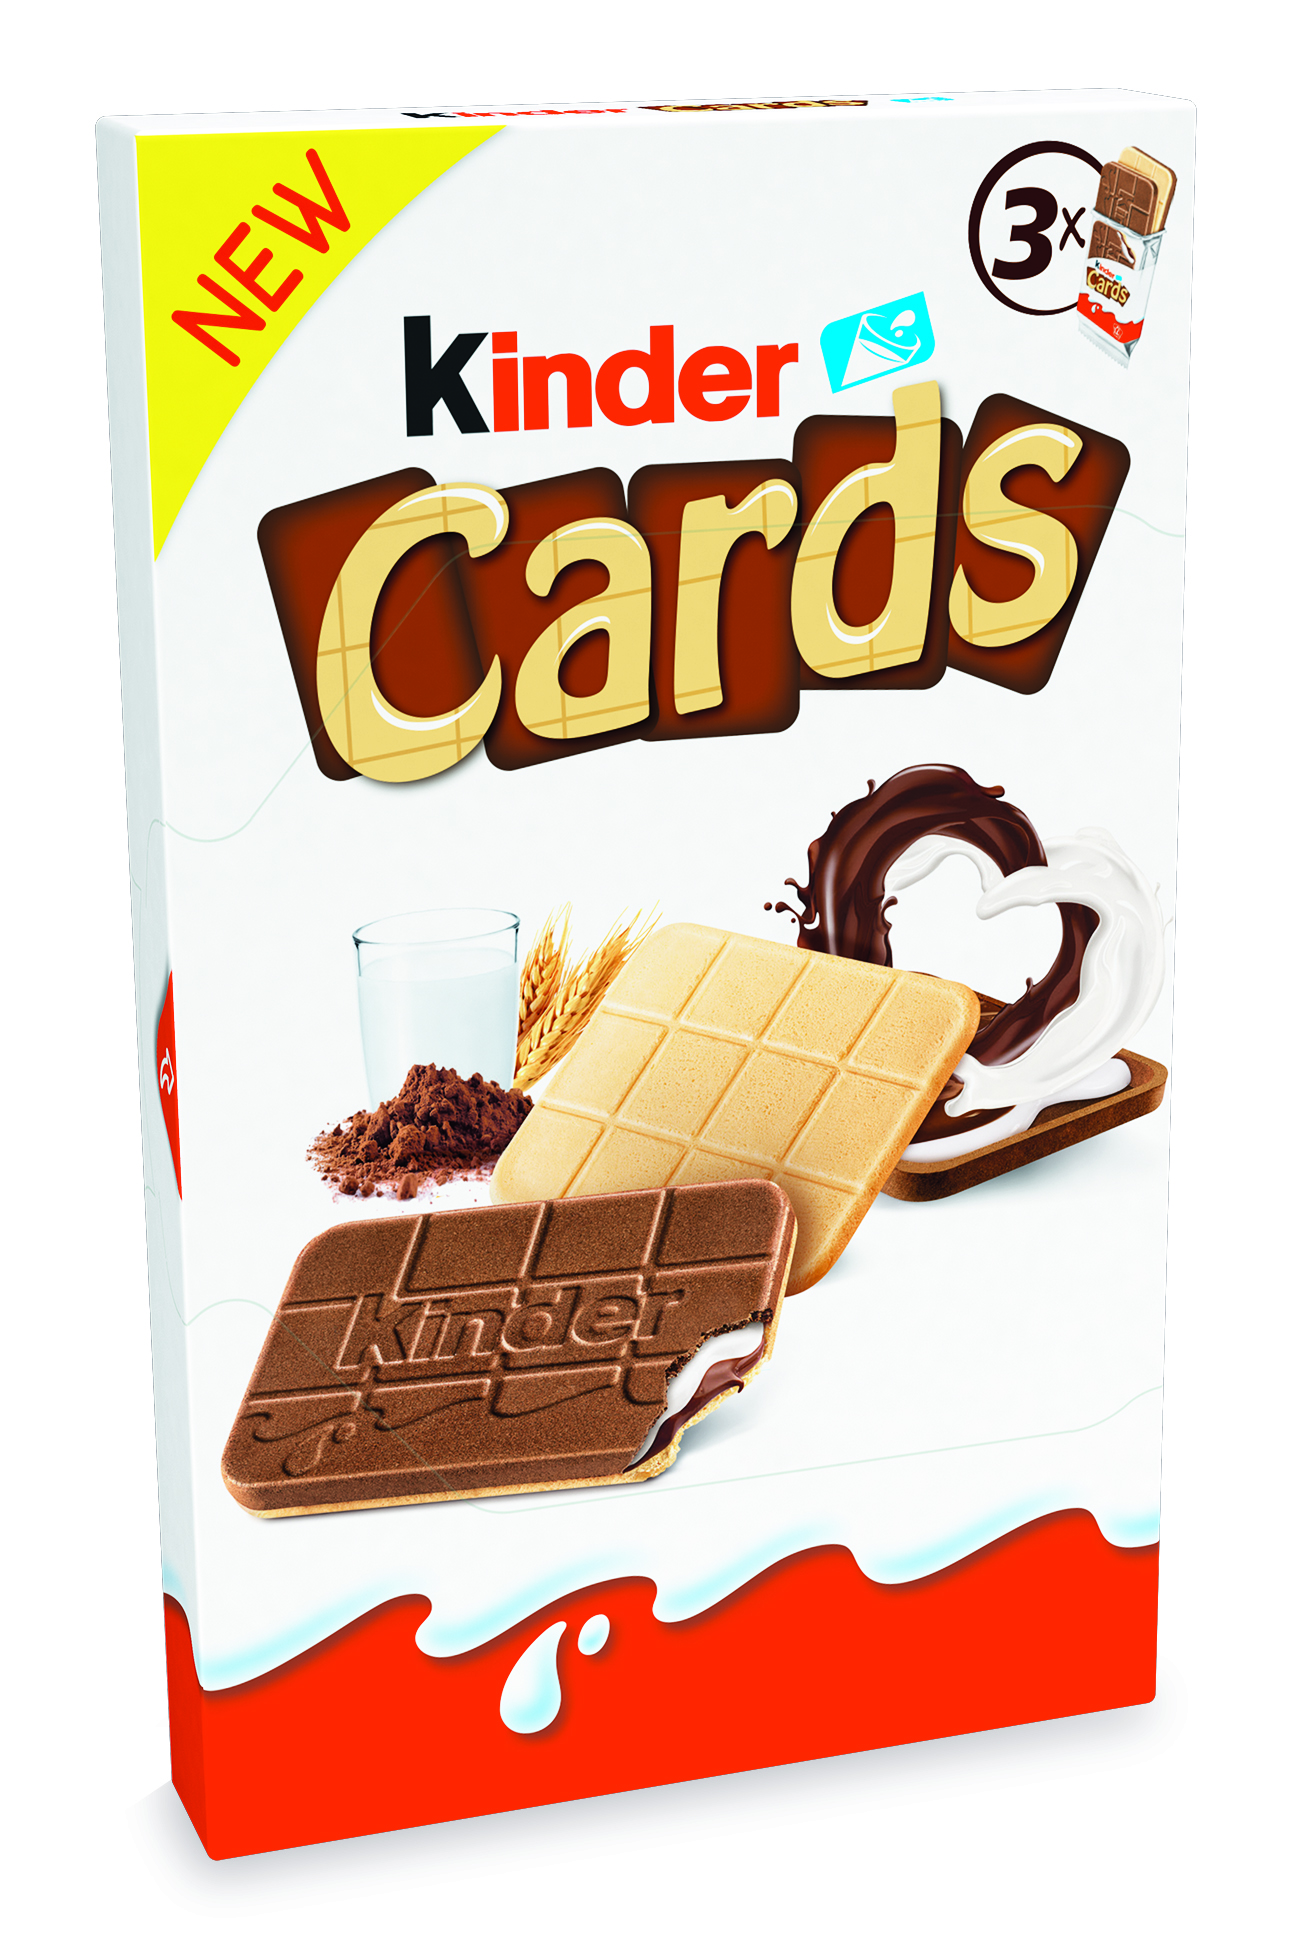 Киндер печенье. Шоколадно-молочное печенье kinder Cards 128гр.. Киндер Cards. Киндер кард. Печенье Киндер Кардс.